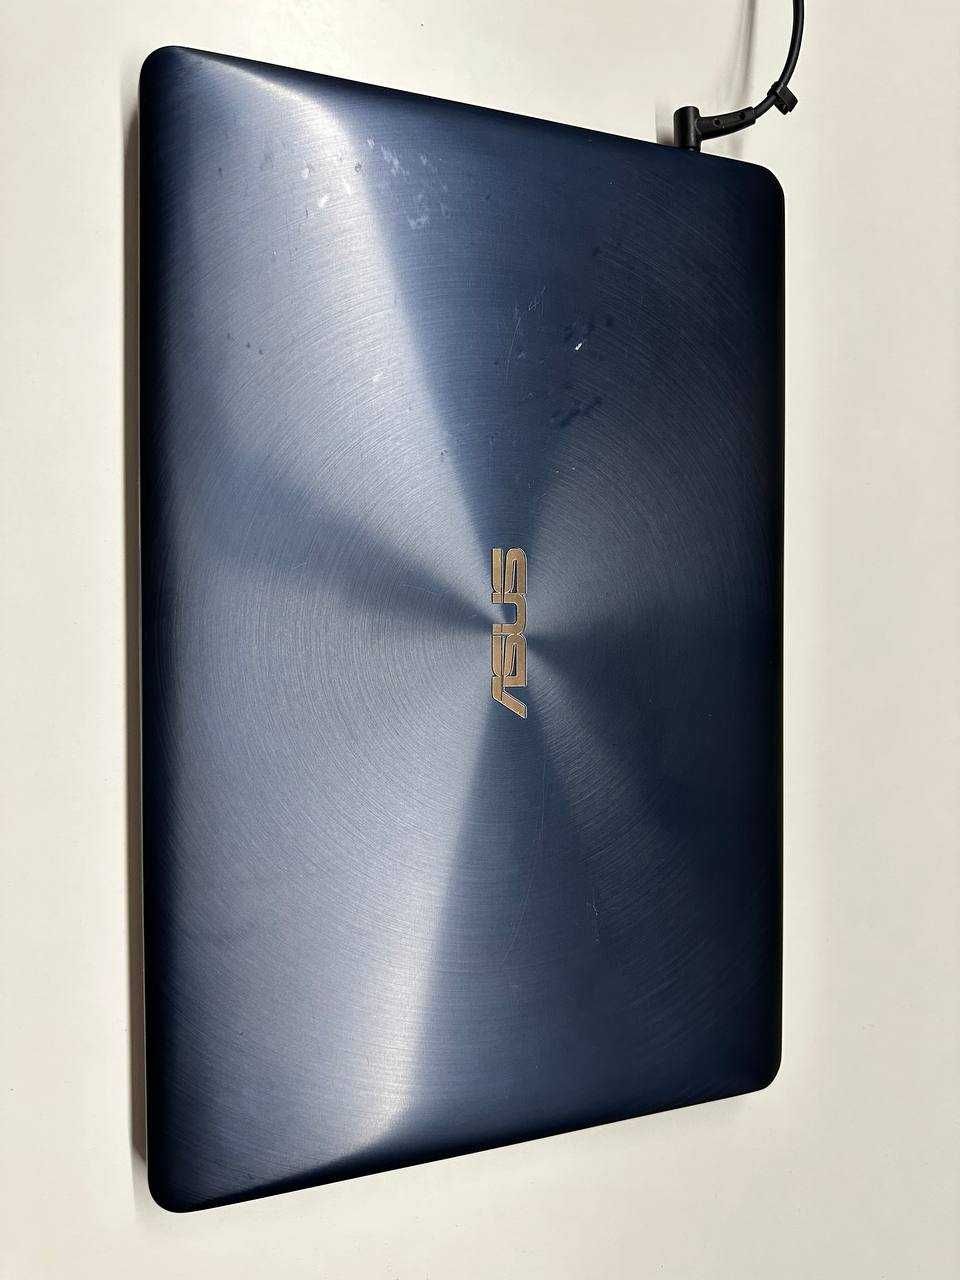 ASUS ZenBook Pro UX580GE